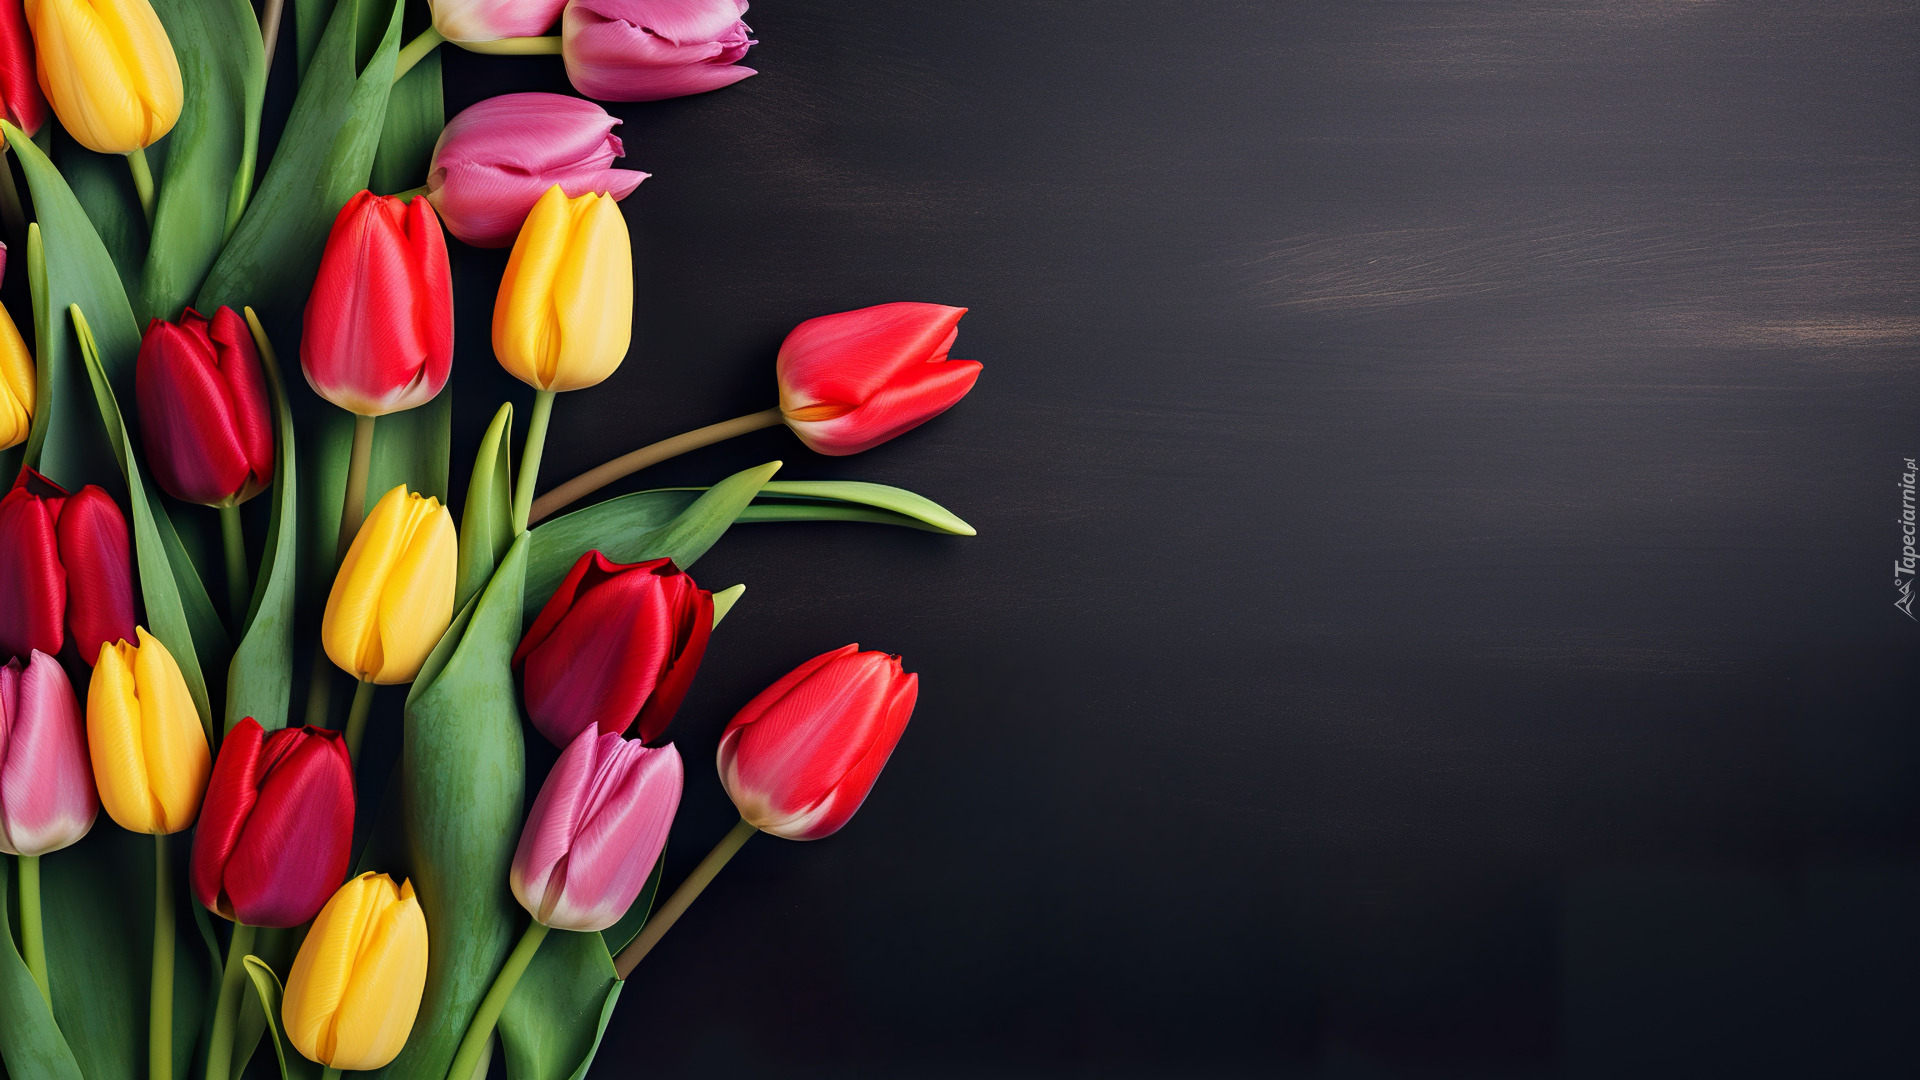 Kolorowe, Tulipany, Ciemne tło